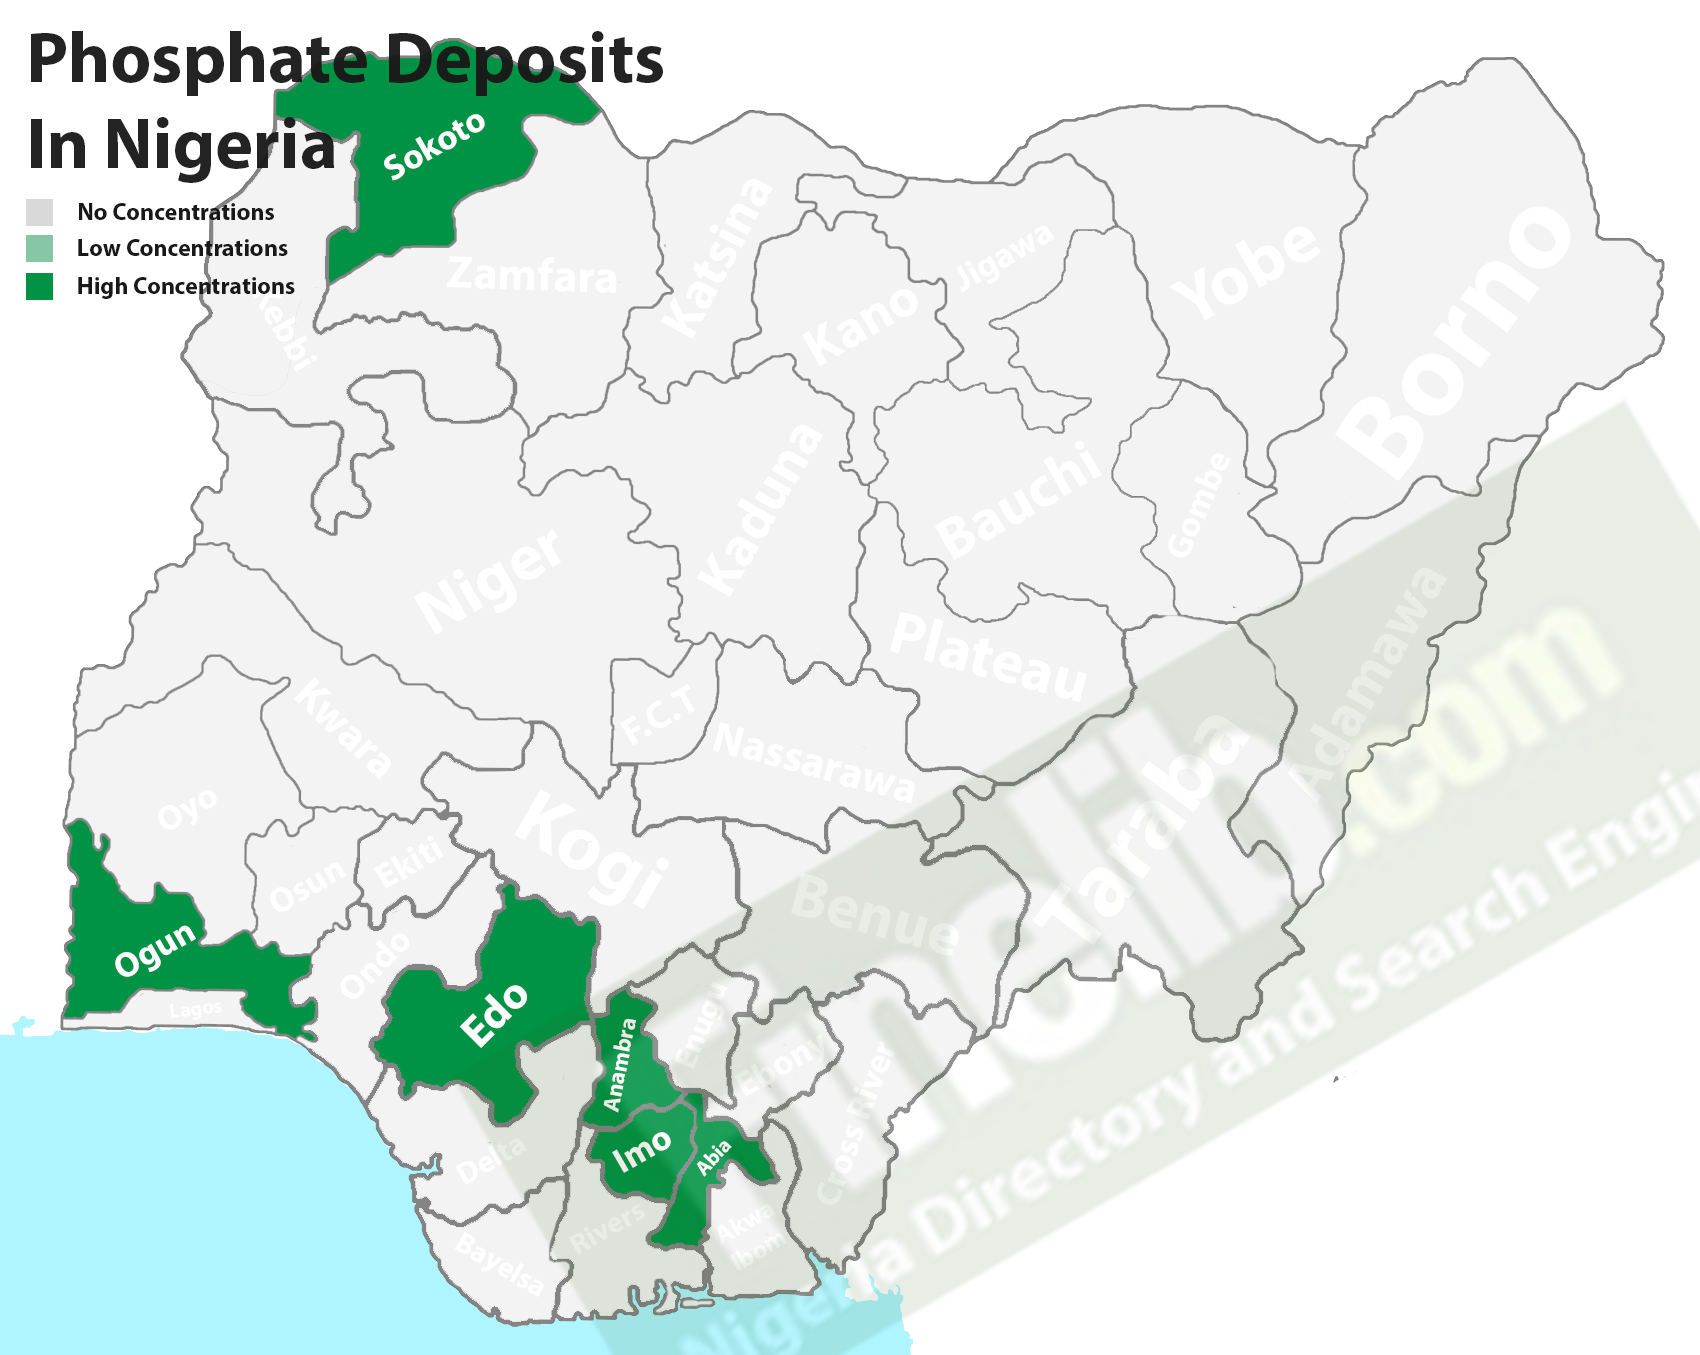 Phosphate mineral deposits in Nigeria